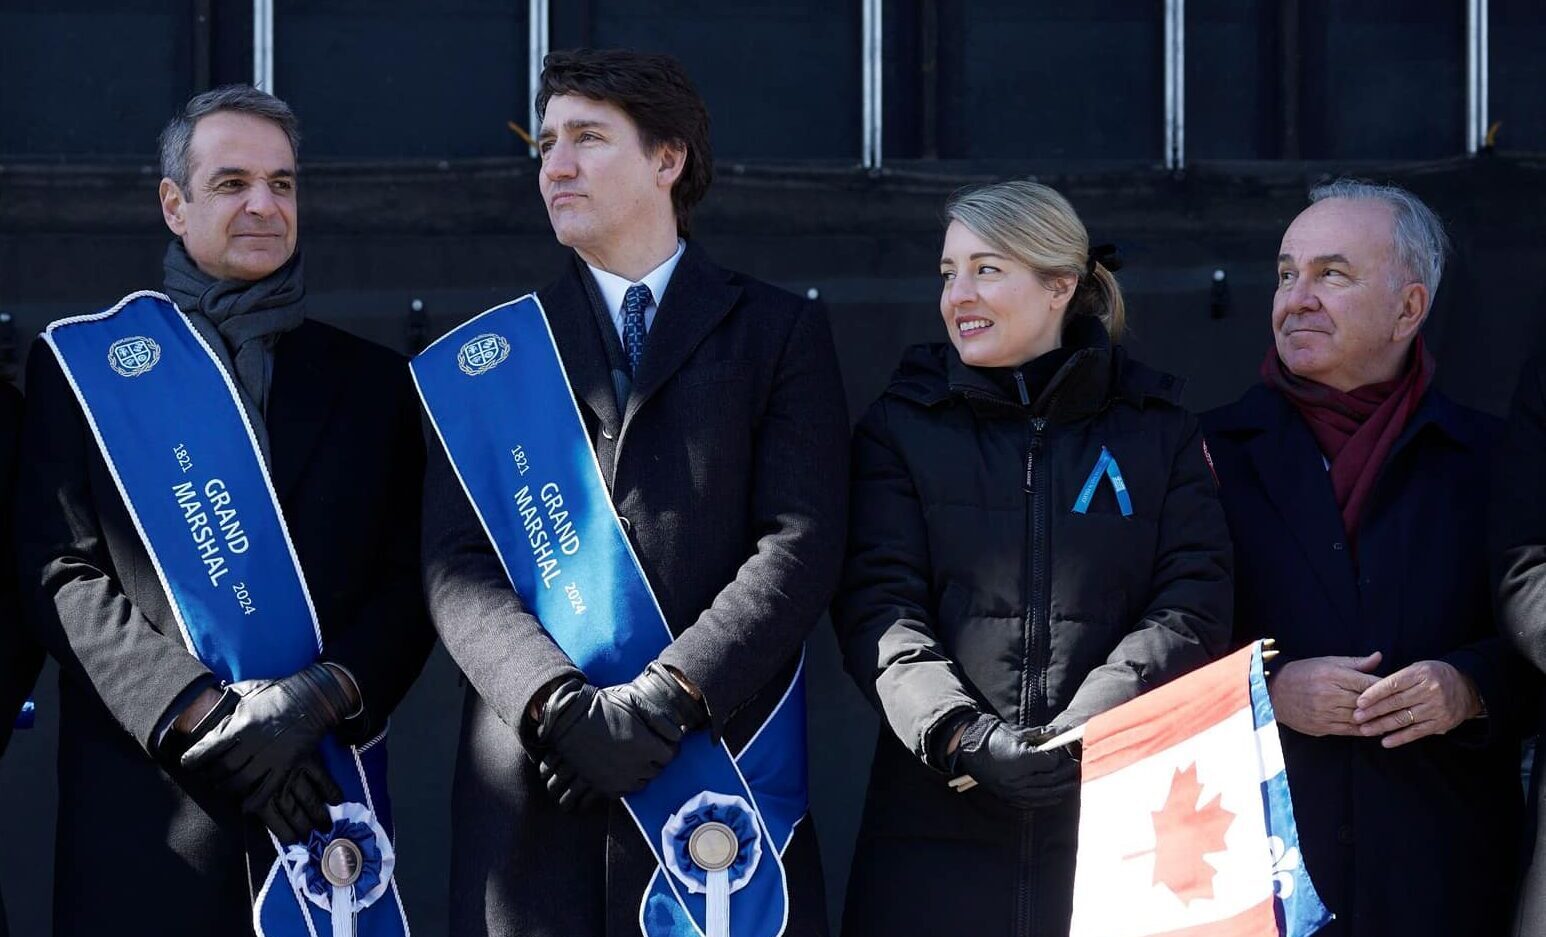 Στην παρέλαση συλλόγων της Ελληνικής Κοινότητας Μείζονος Μόντρεαλ, με τον Πρωθυπουργό Κυριάκο Μητσοτάκη και τον Πρωθυπουργό του Καναδά